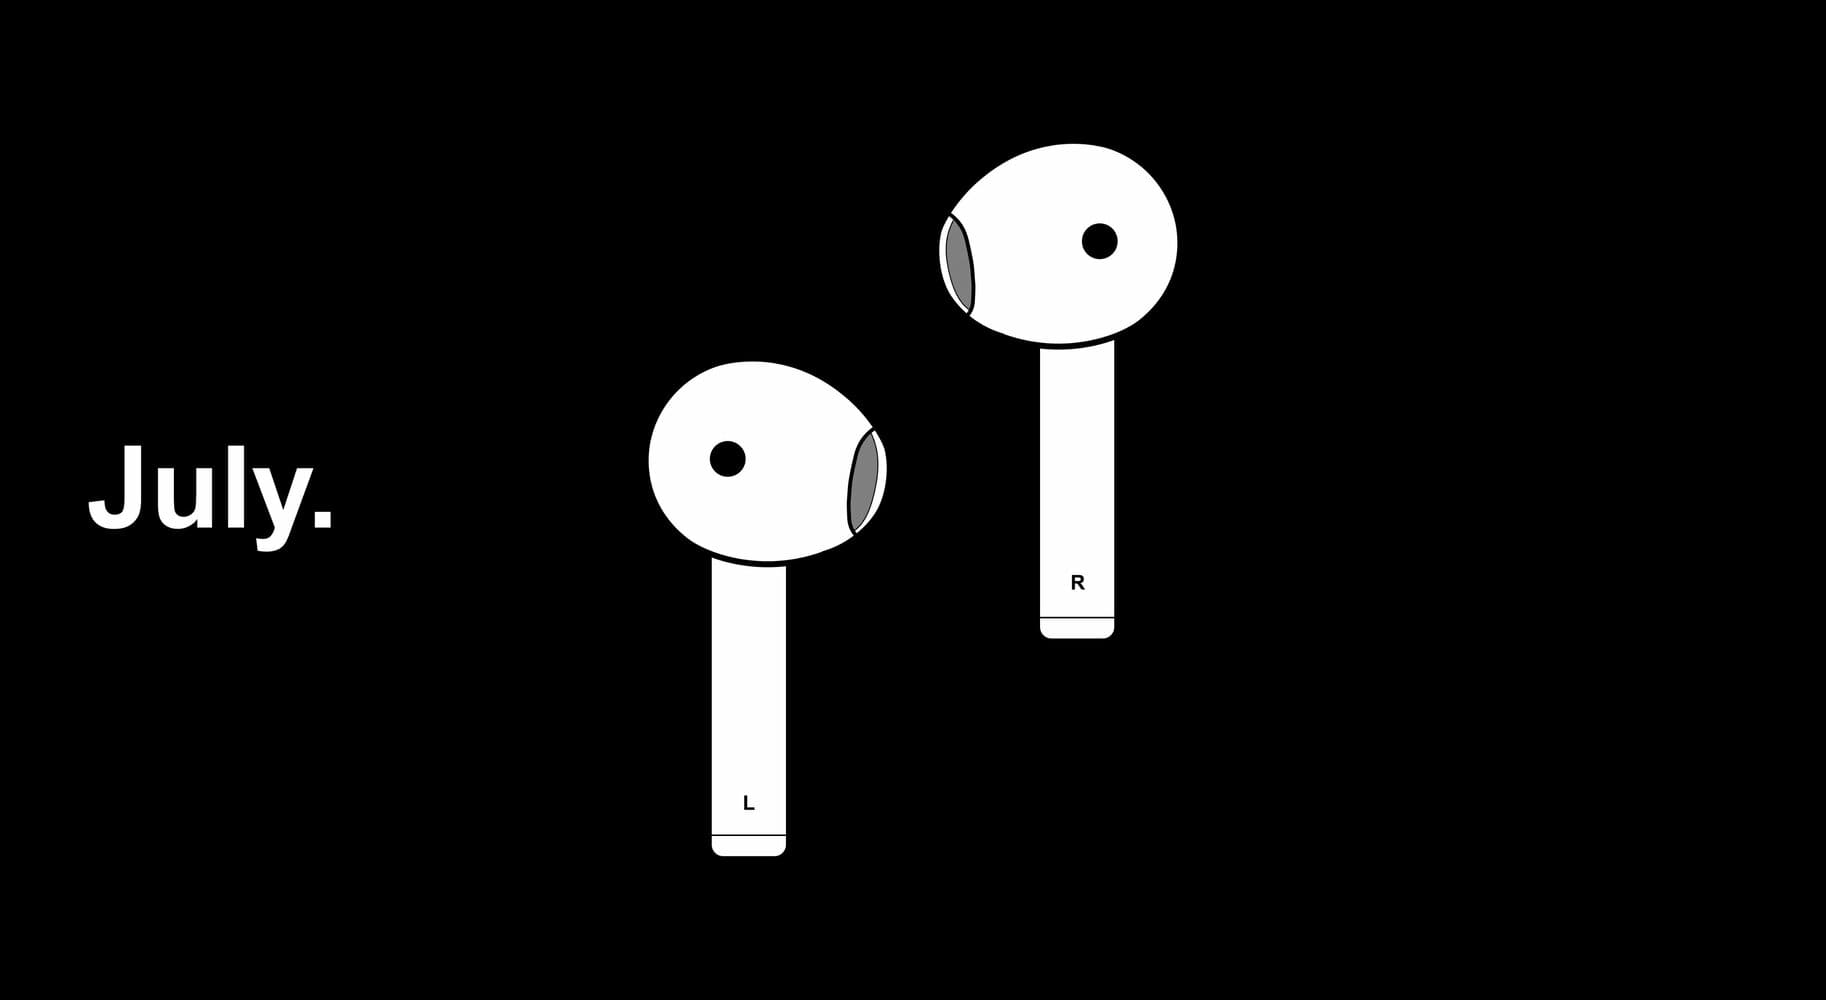 Ακουστικά OnePlus Bullets: τιμή και ημερομηνία κυκλοφορίας, πότε θα κυκλοφορήσει το νέο από το OnePlus; Νέα και κριτικές από το myheadphone.desigusxpro.com/el/